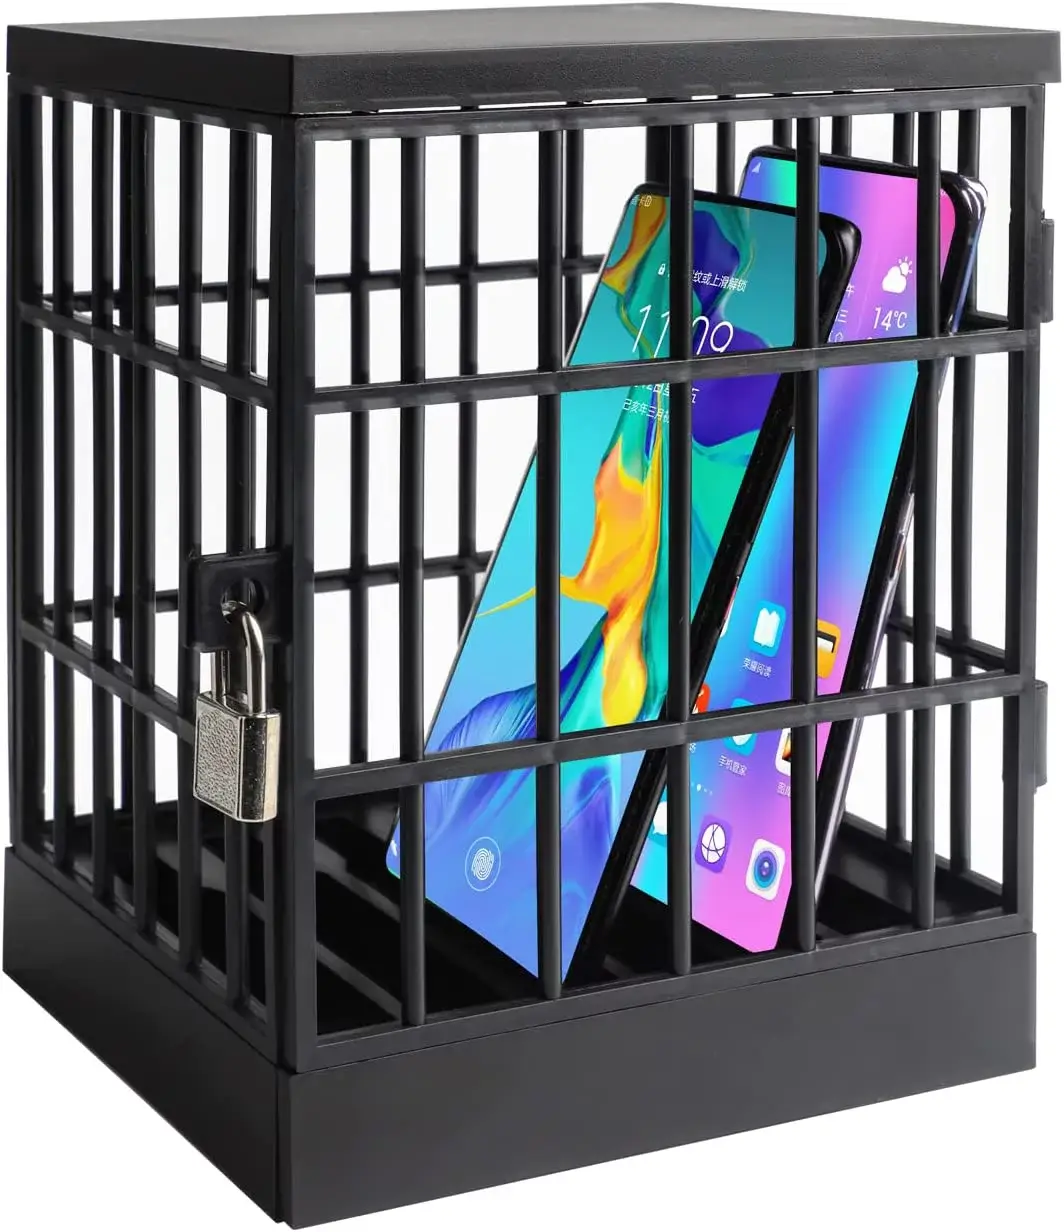 Smart phones in jail